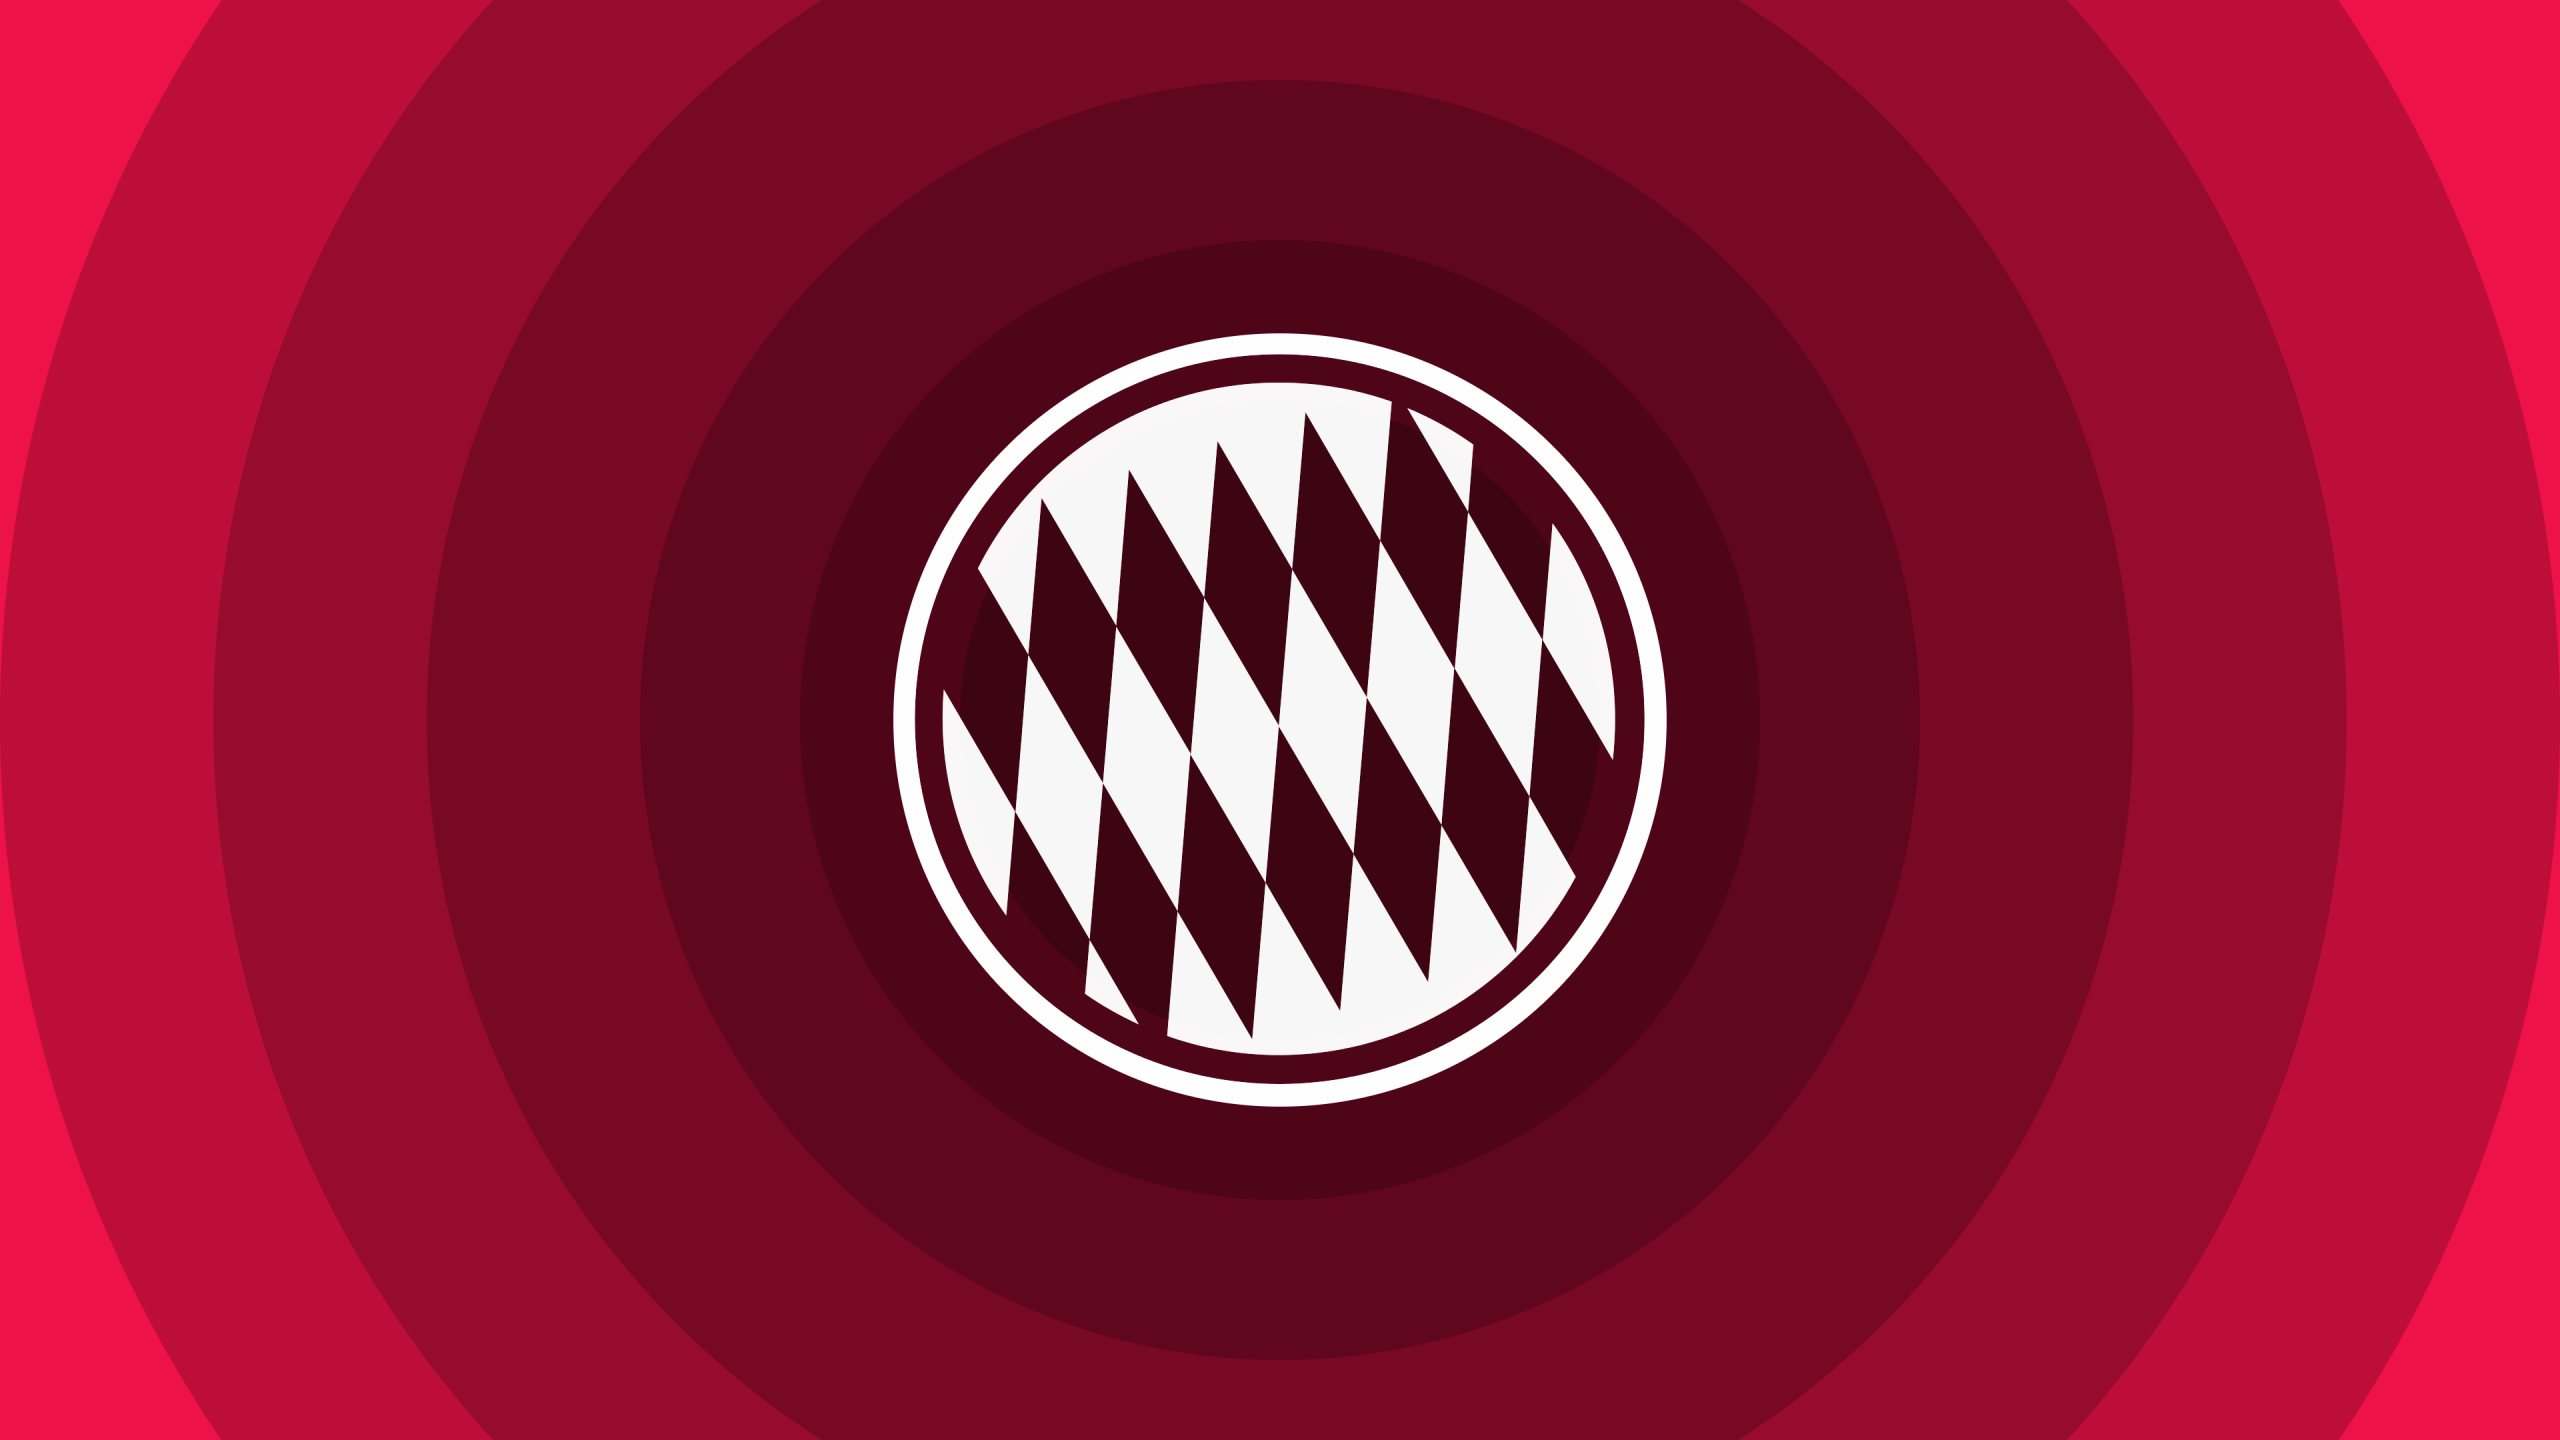 Fc Bayern Munich Minimal Logo At 2560 X 1440 Size - Fc Bayern Munchen Red Logo , HD Wallpaper & Backgrounds